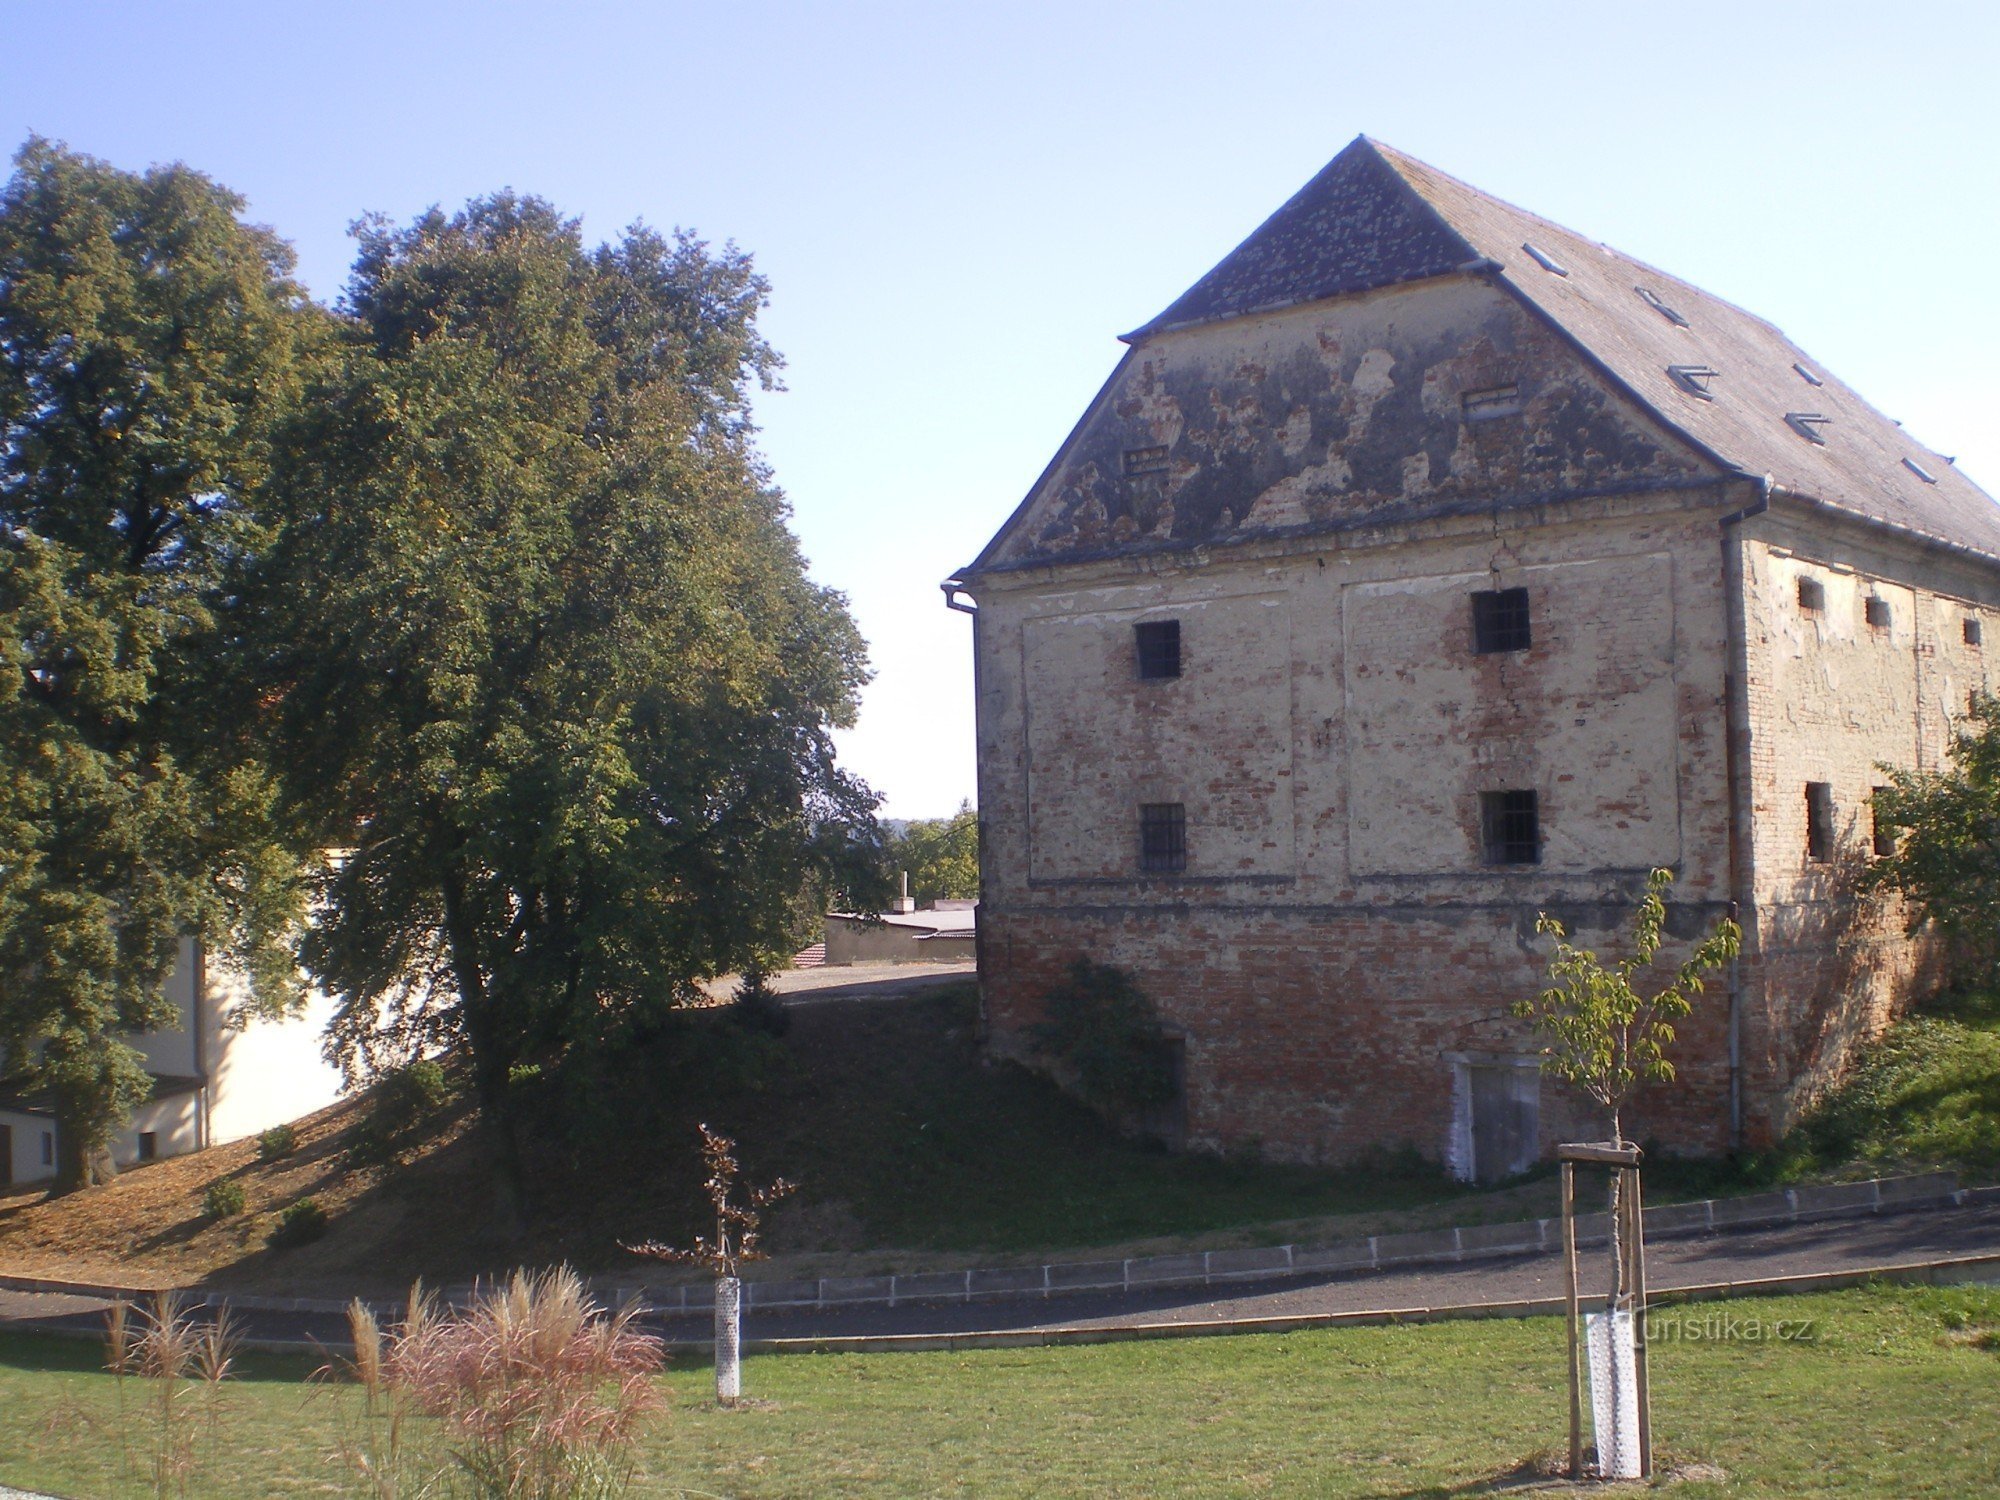 Pháo đài gần nhà thờ ở Milonice